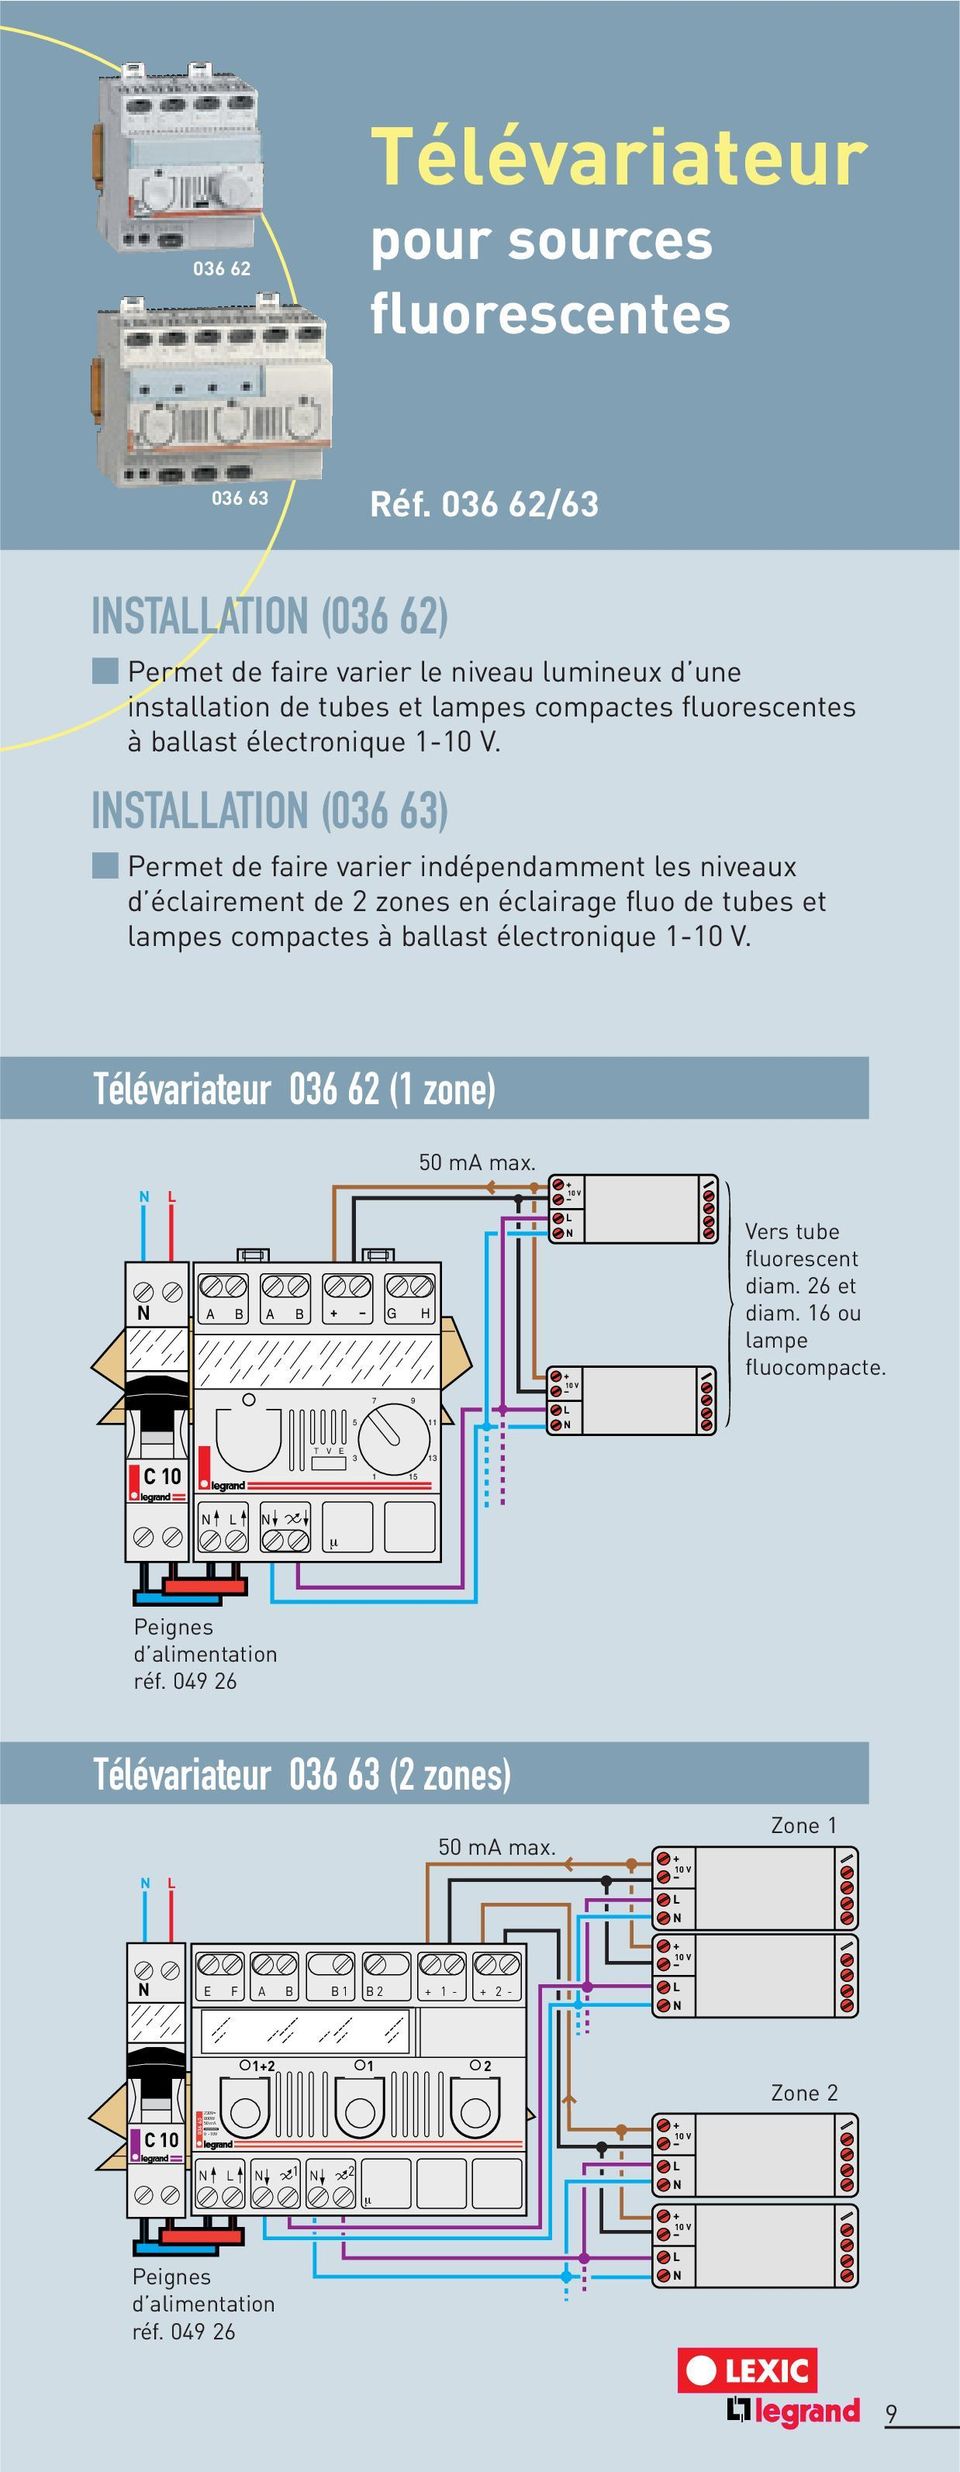 ISTAATIO (036 63) Permet de faire varier indépendamment les niveaux d éclairement de 2 zones en éclairage fluo de tubes et lampes compactes à ballast électronique 1-10 V.